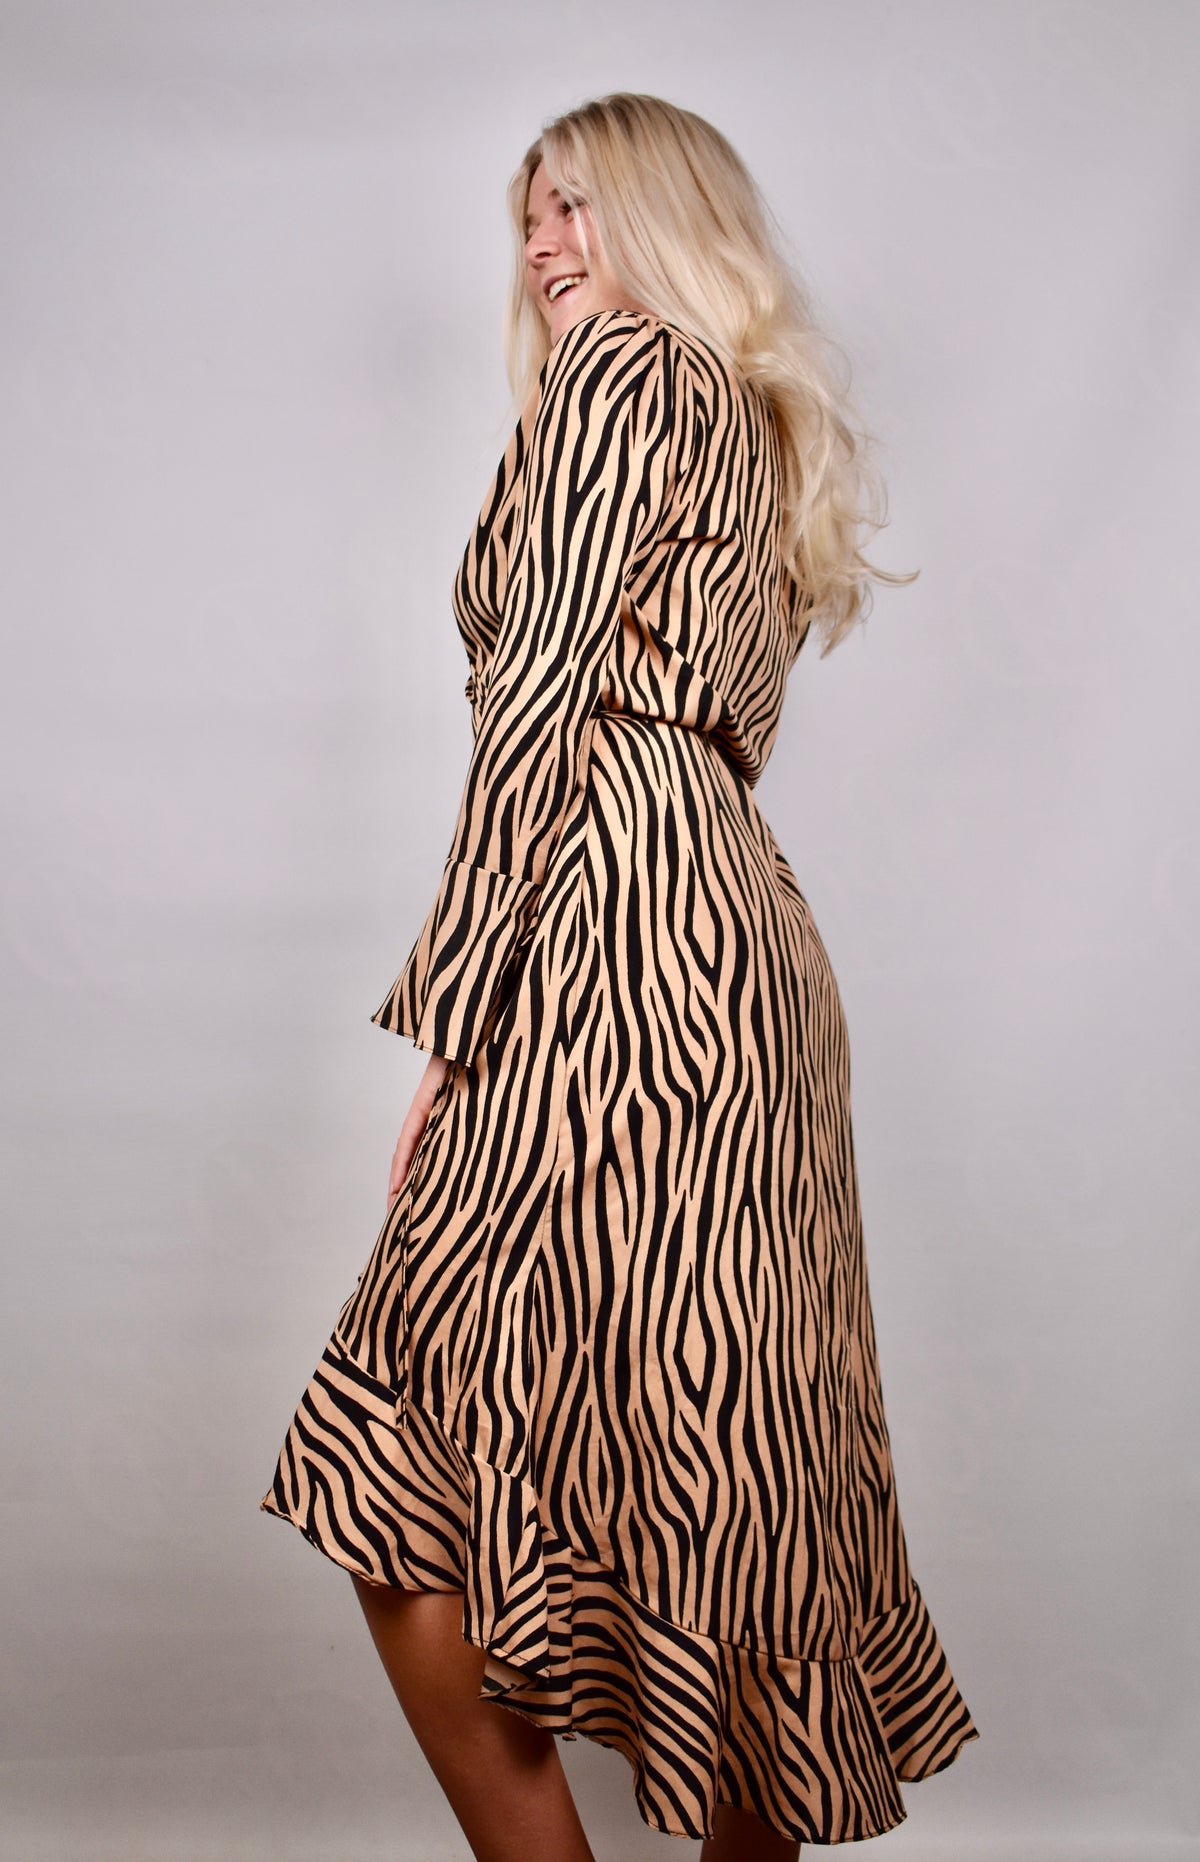 Mia's Zebra Dress